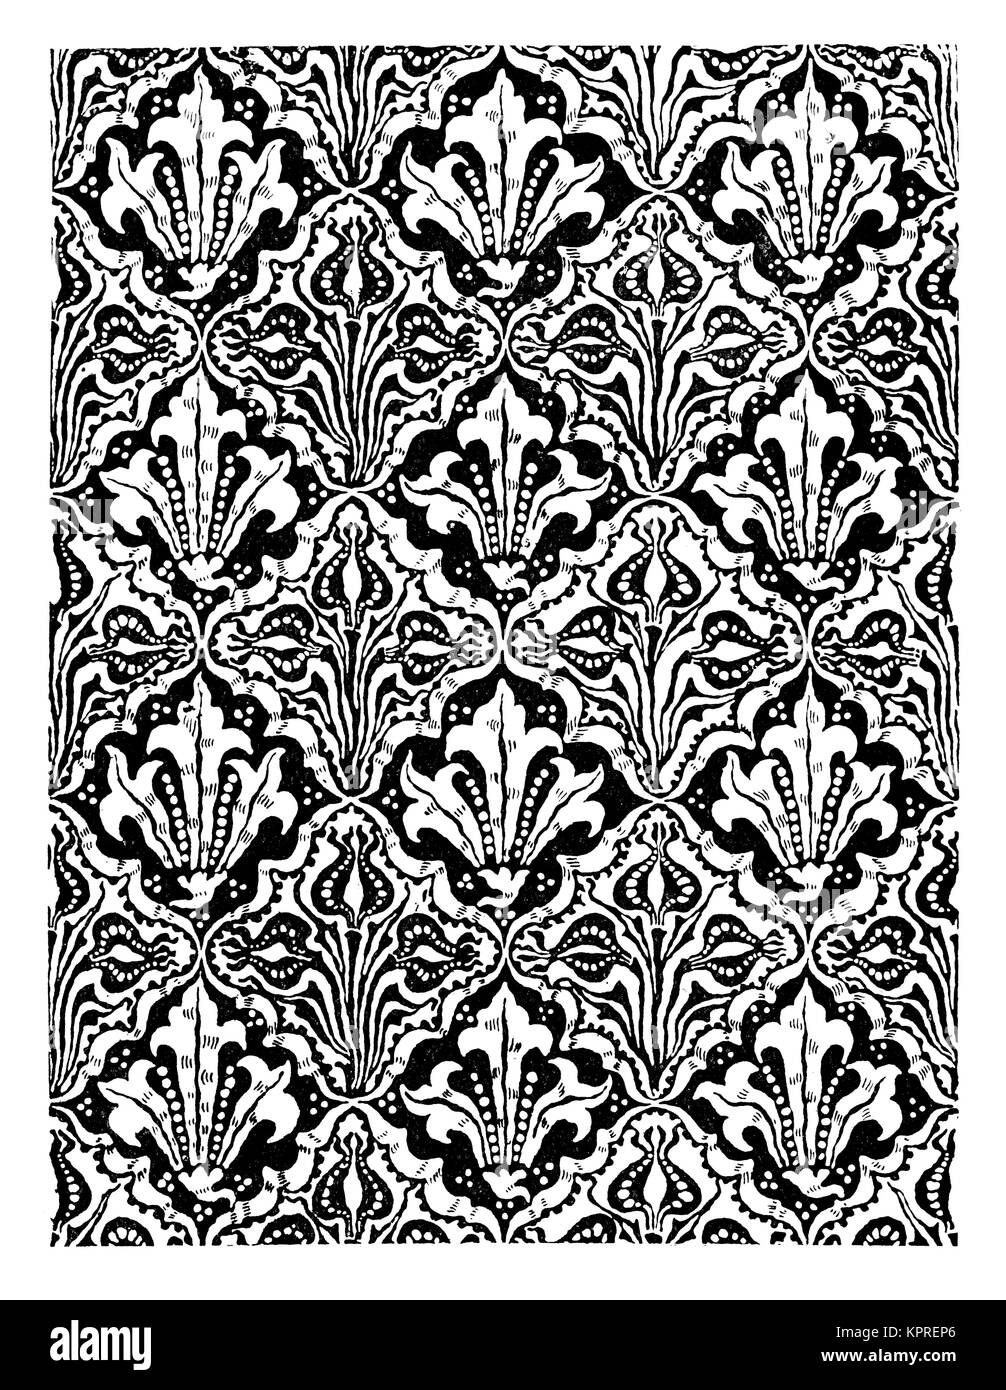 Seme e fiore wallpaper design da artista e designer Walter gru da 1894 volume 4 della rivista di studio Foto Stock